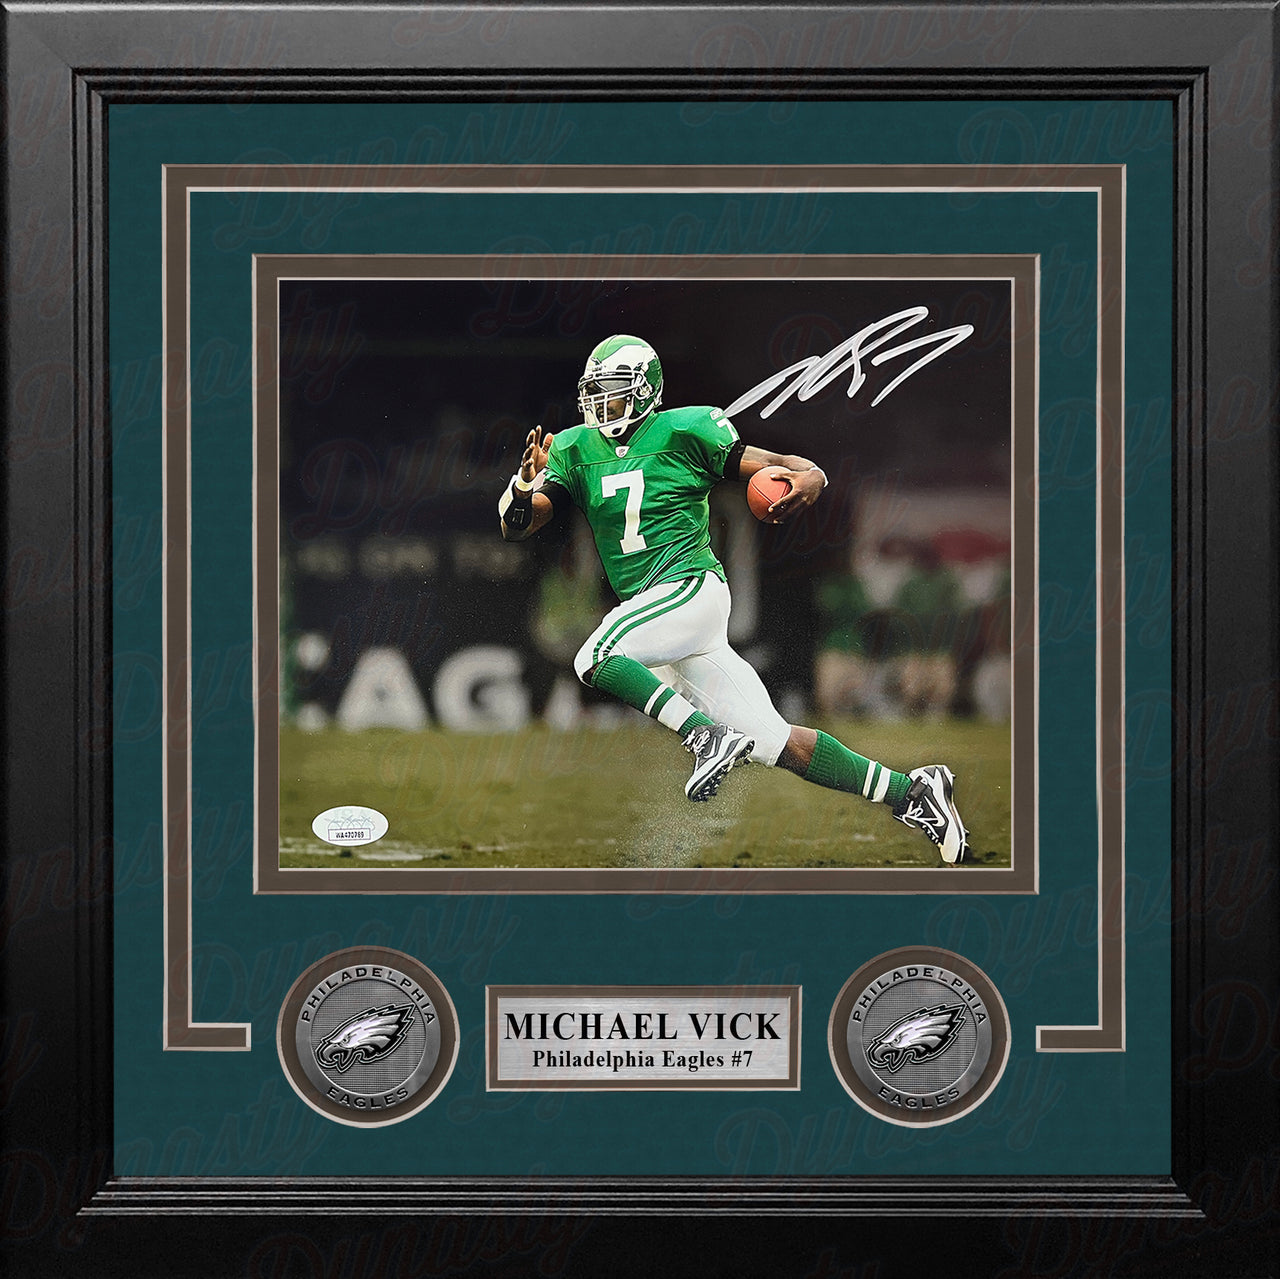 Michael Vick Philadelphia Eagles Autographed Alternate Black Speed Mini- Helmet - Dynasty Sports & Framing